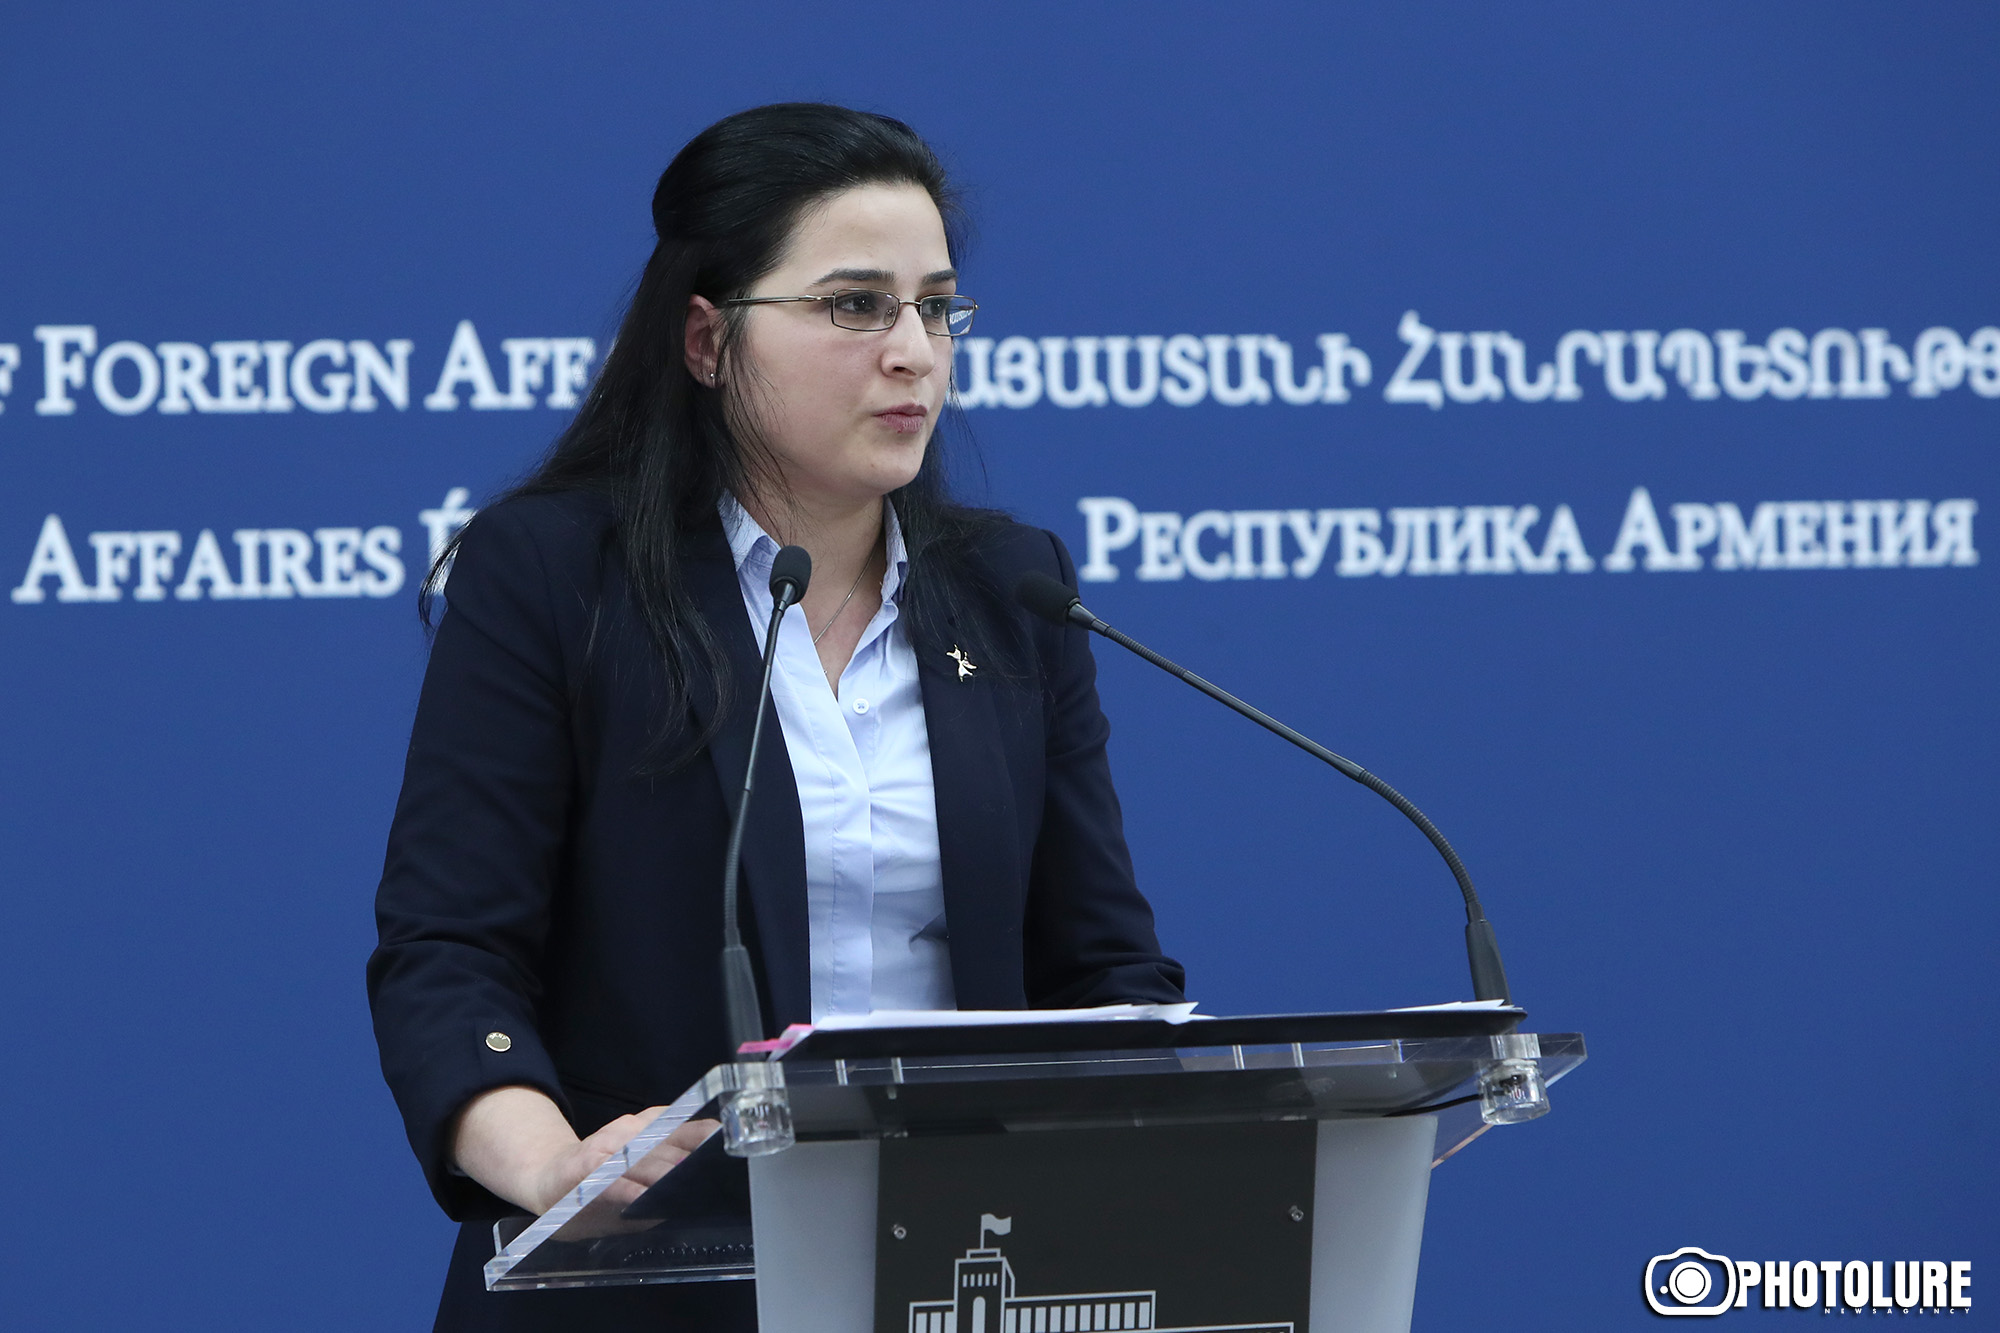 Армения отрицает язык угрозы и выступает с позиций мирного решения проблемы - МИД